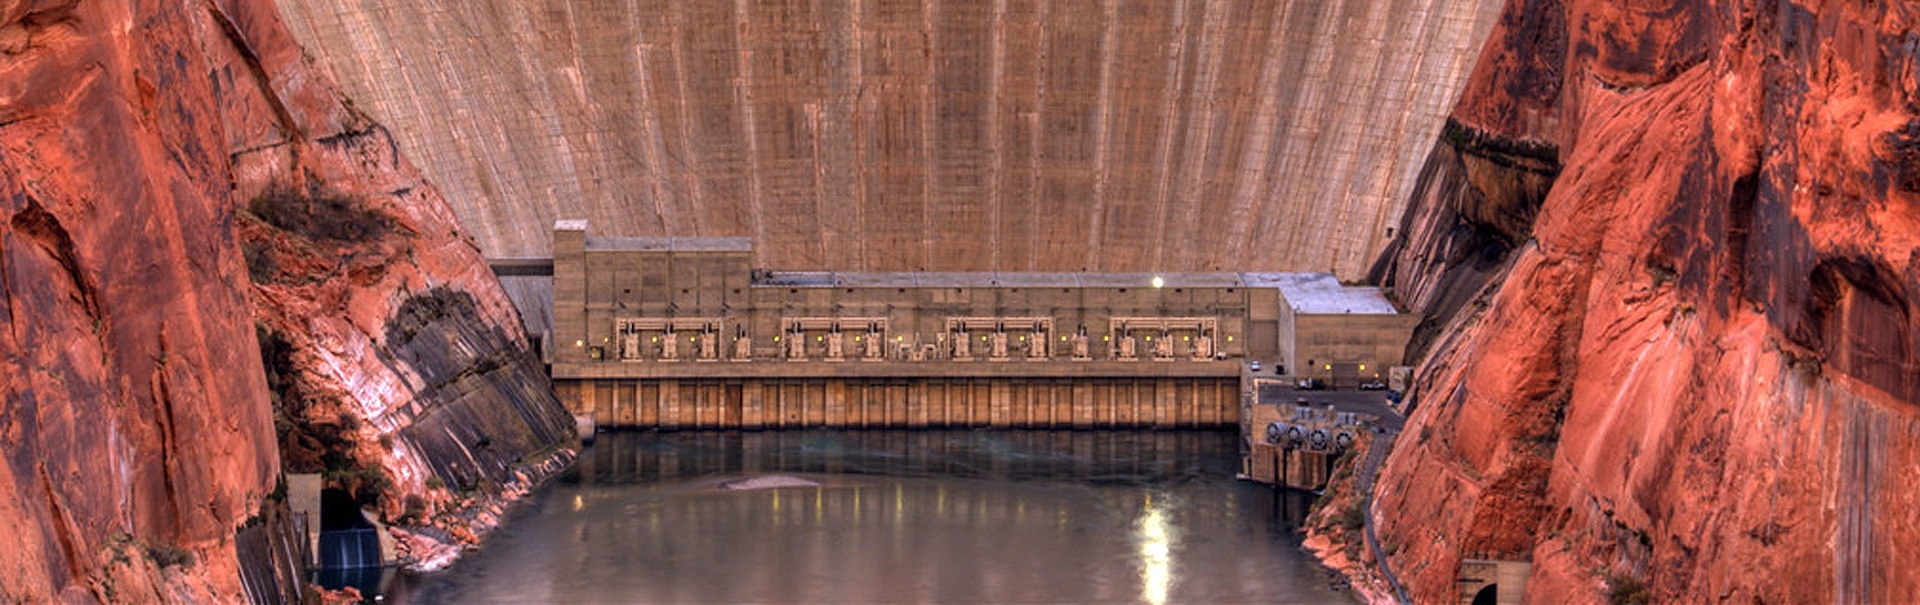 dam infrastructure